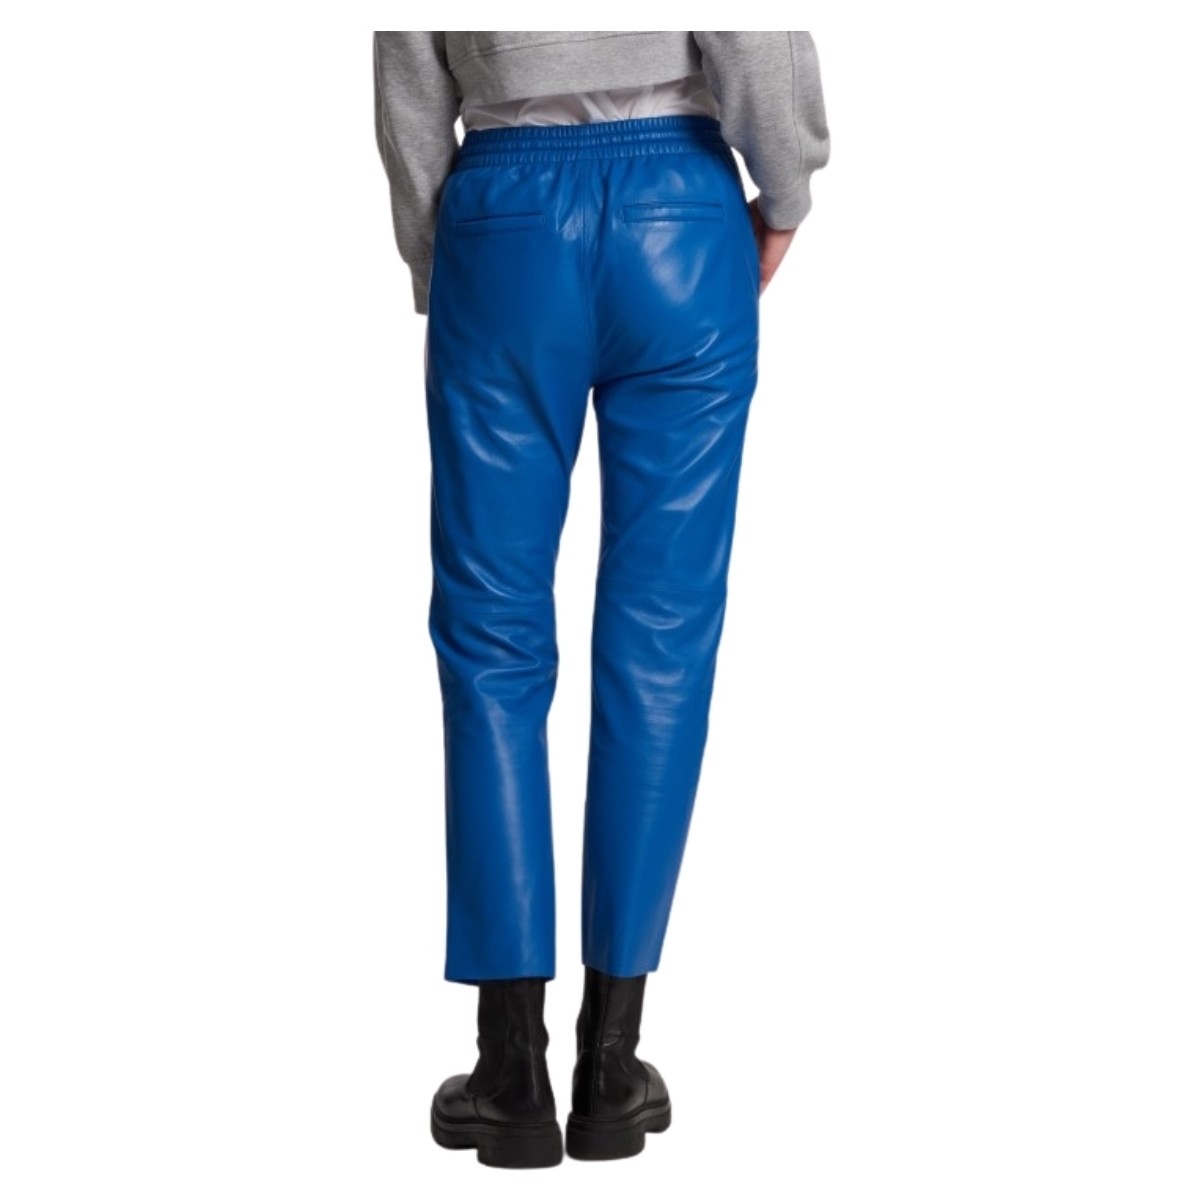 Oakwood Bleu Pantalon jogpant en cuir Gift Ref 50426 Bleu uEinoeVJ